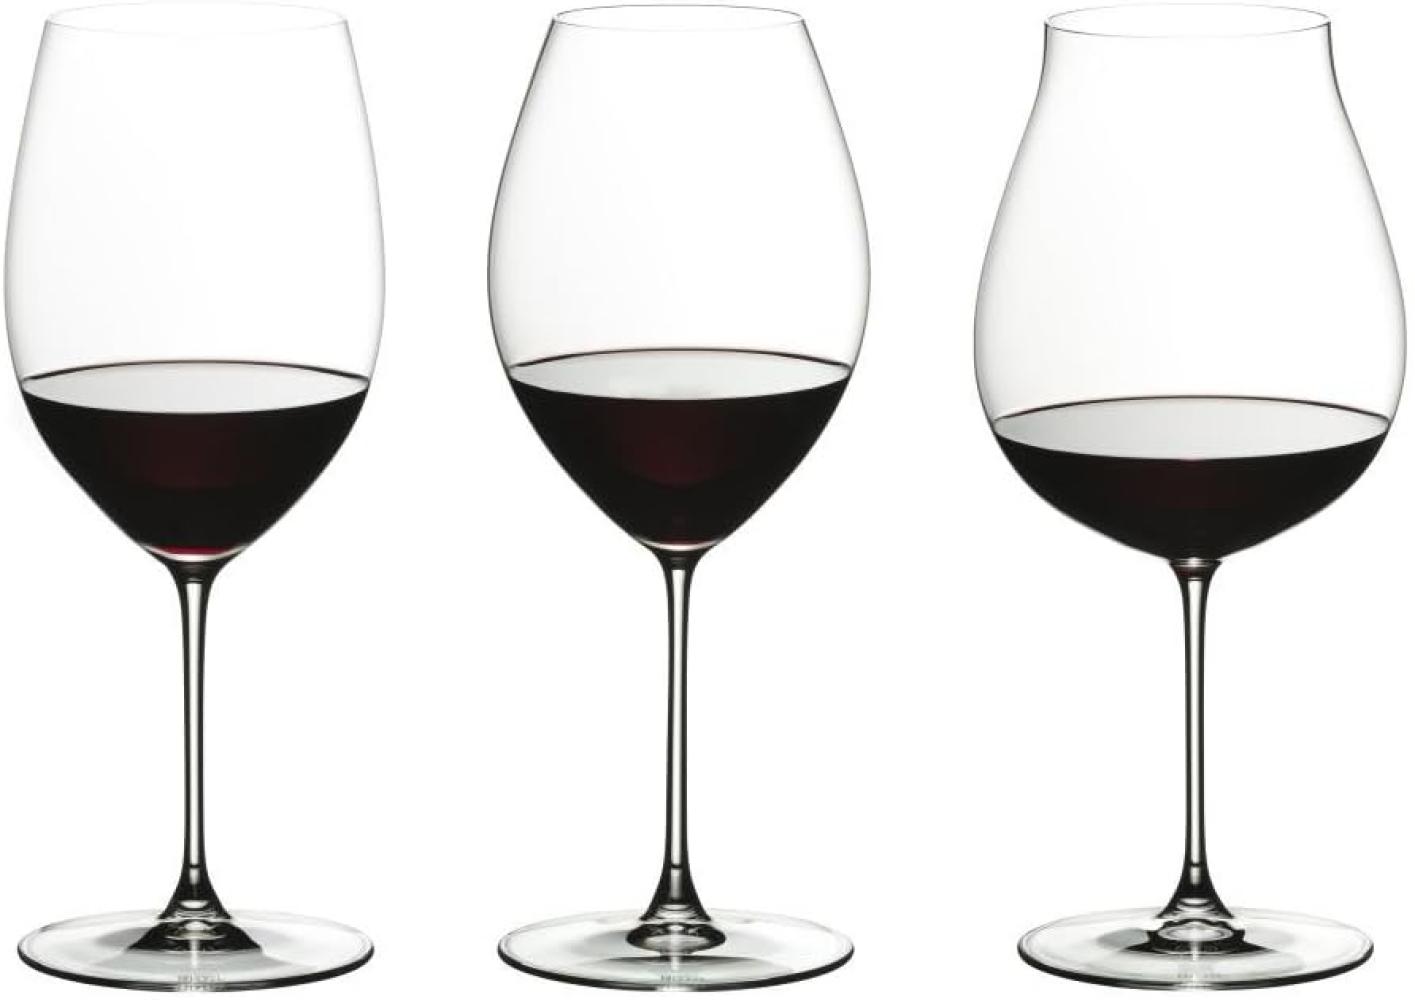 Riedel Veritas Verkostungsset Rotwein, 4-tlg, Rotweinglas, Weinglas, Verkostungsglas, Hochwertiges Glas, 5449/74 Bild 1